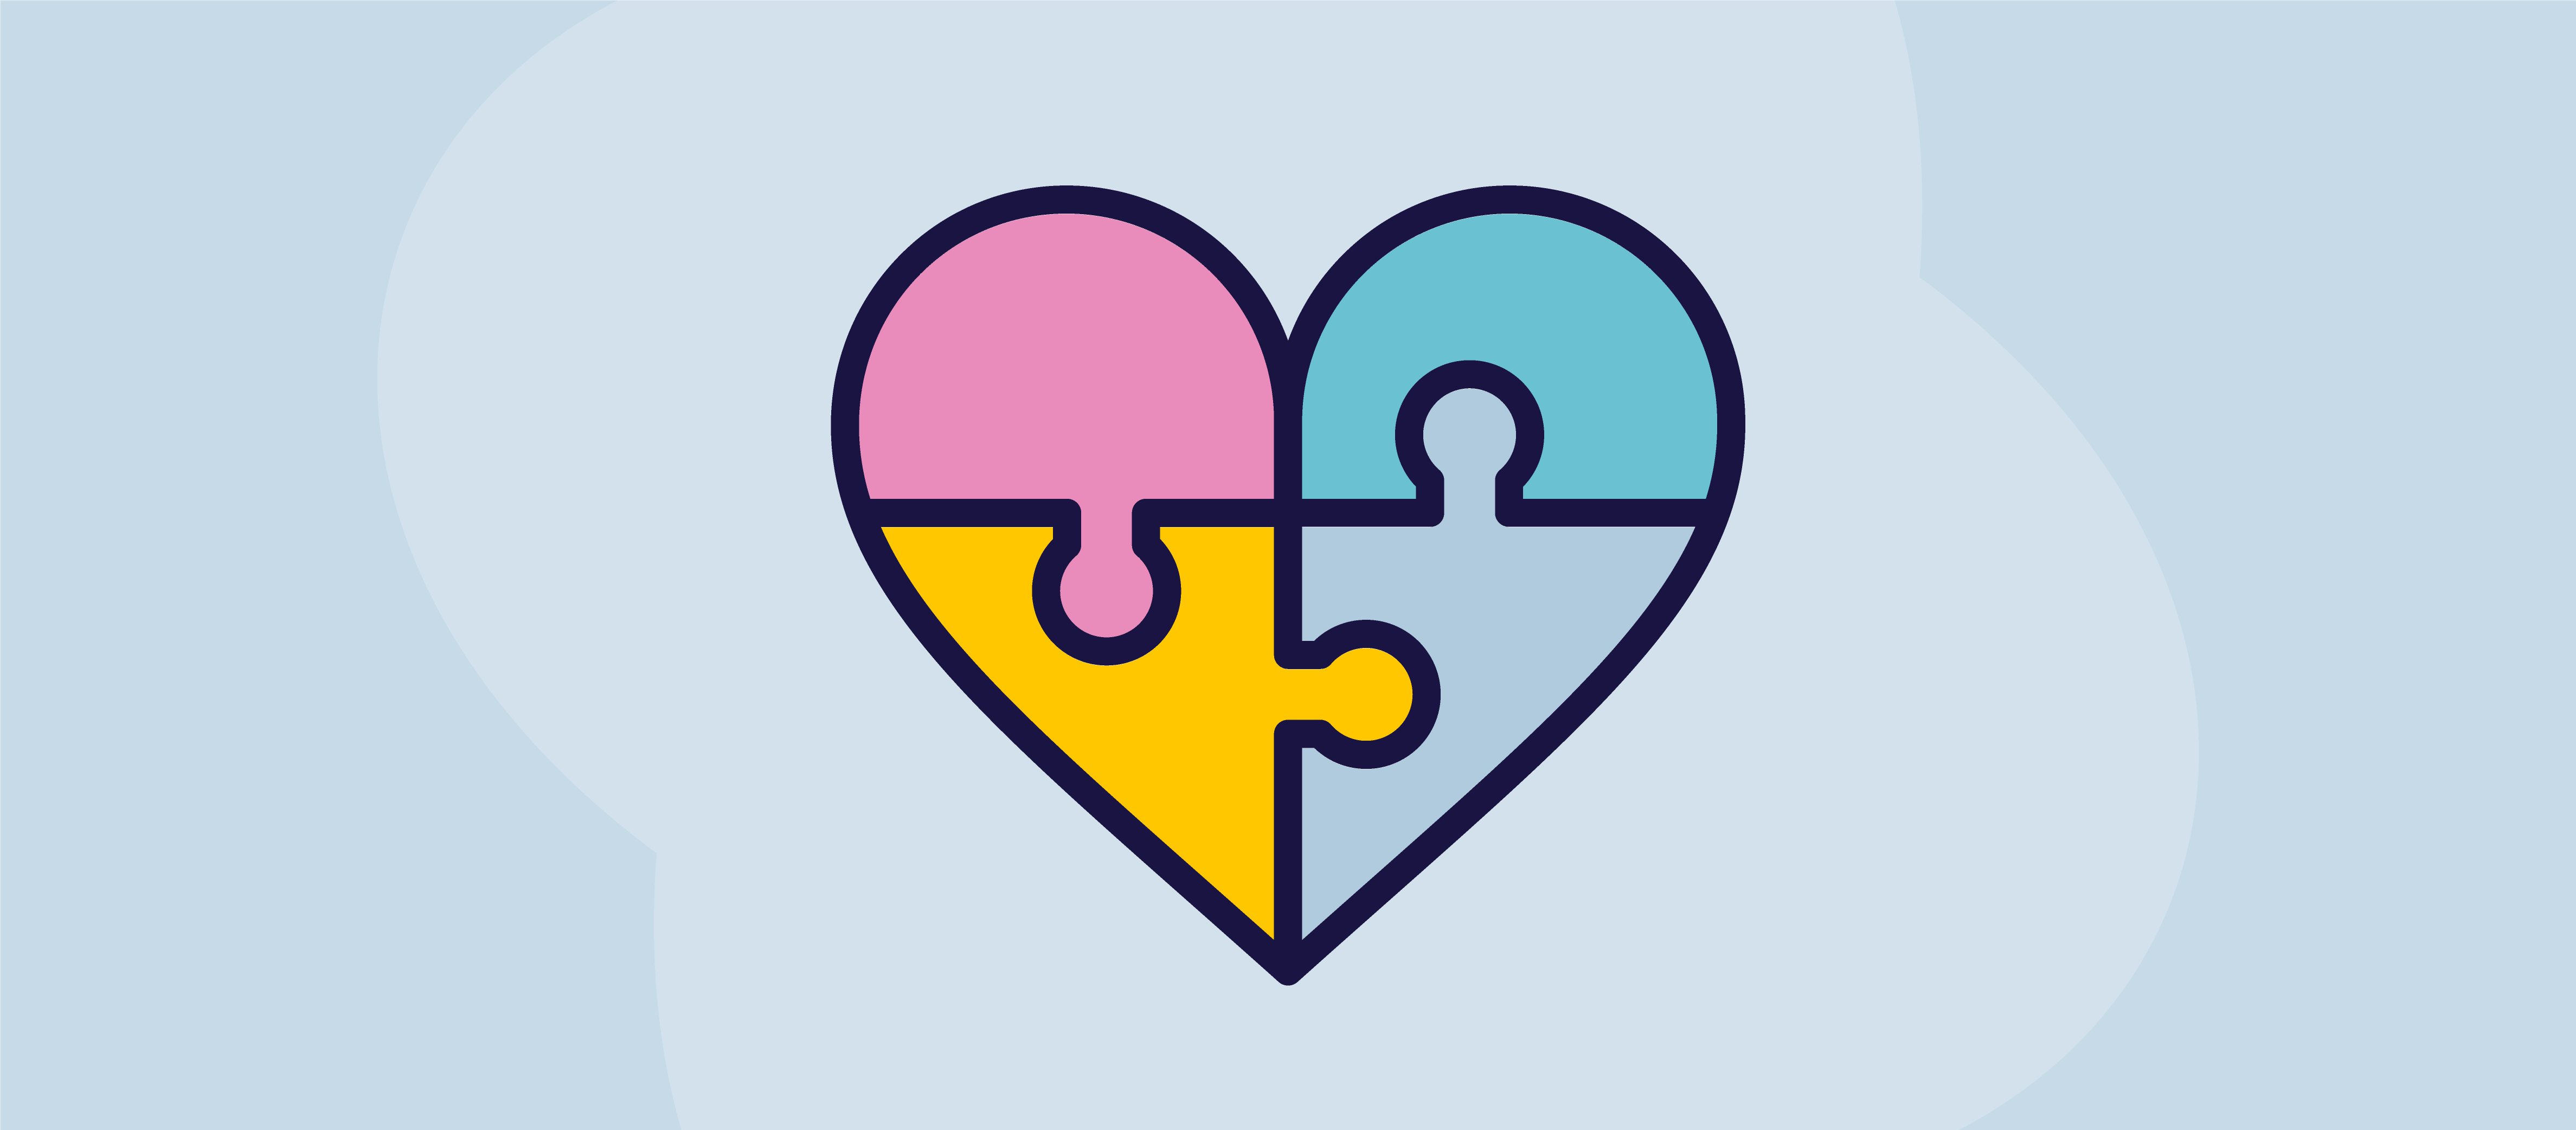 En illustration af et hjerte som et puslespil med fire forskellige farvede brikker, der skal samles for at gøre det komplet.